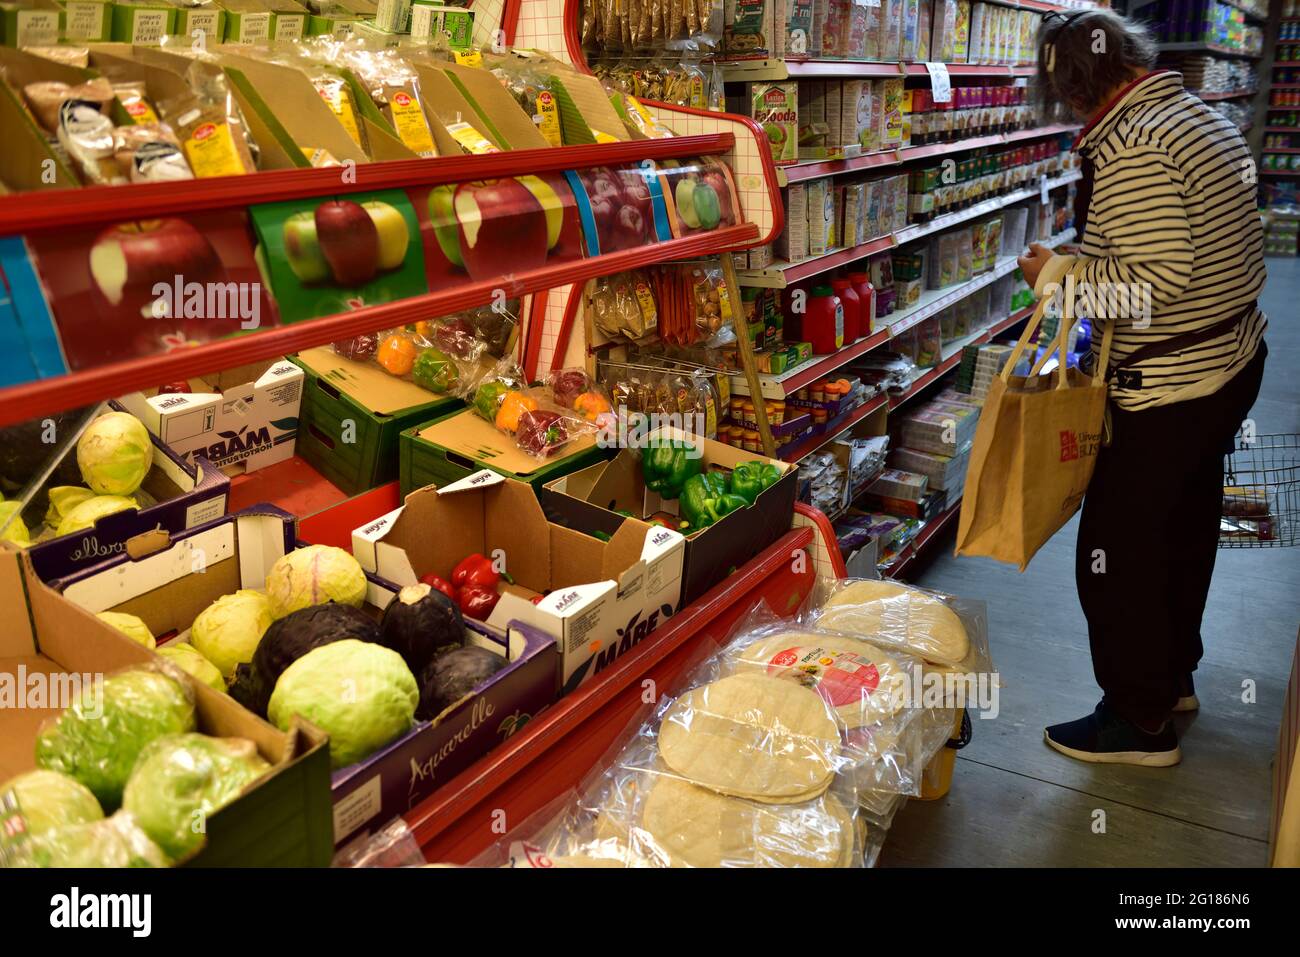 Einkaufen in kleinen lokalen Lebensmittelgeschäft mit frischem Gemüse und anderen Lebensmitteln, Großbritannien Stockfoto